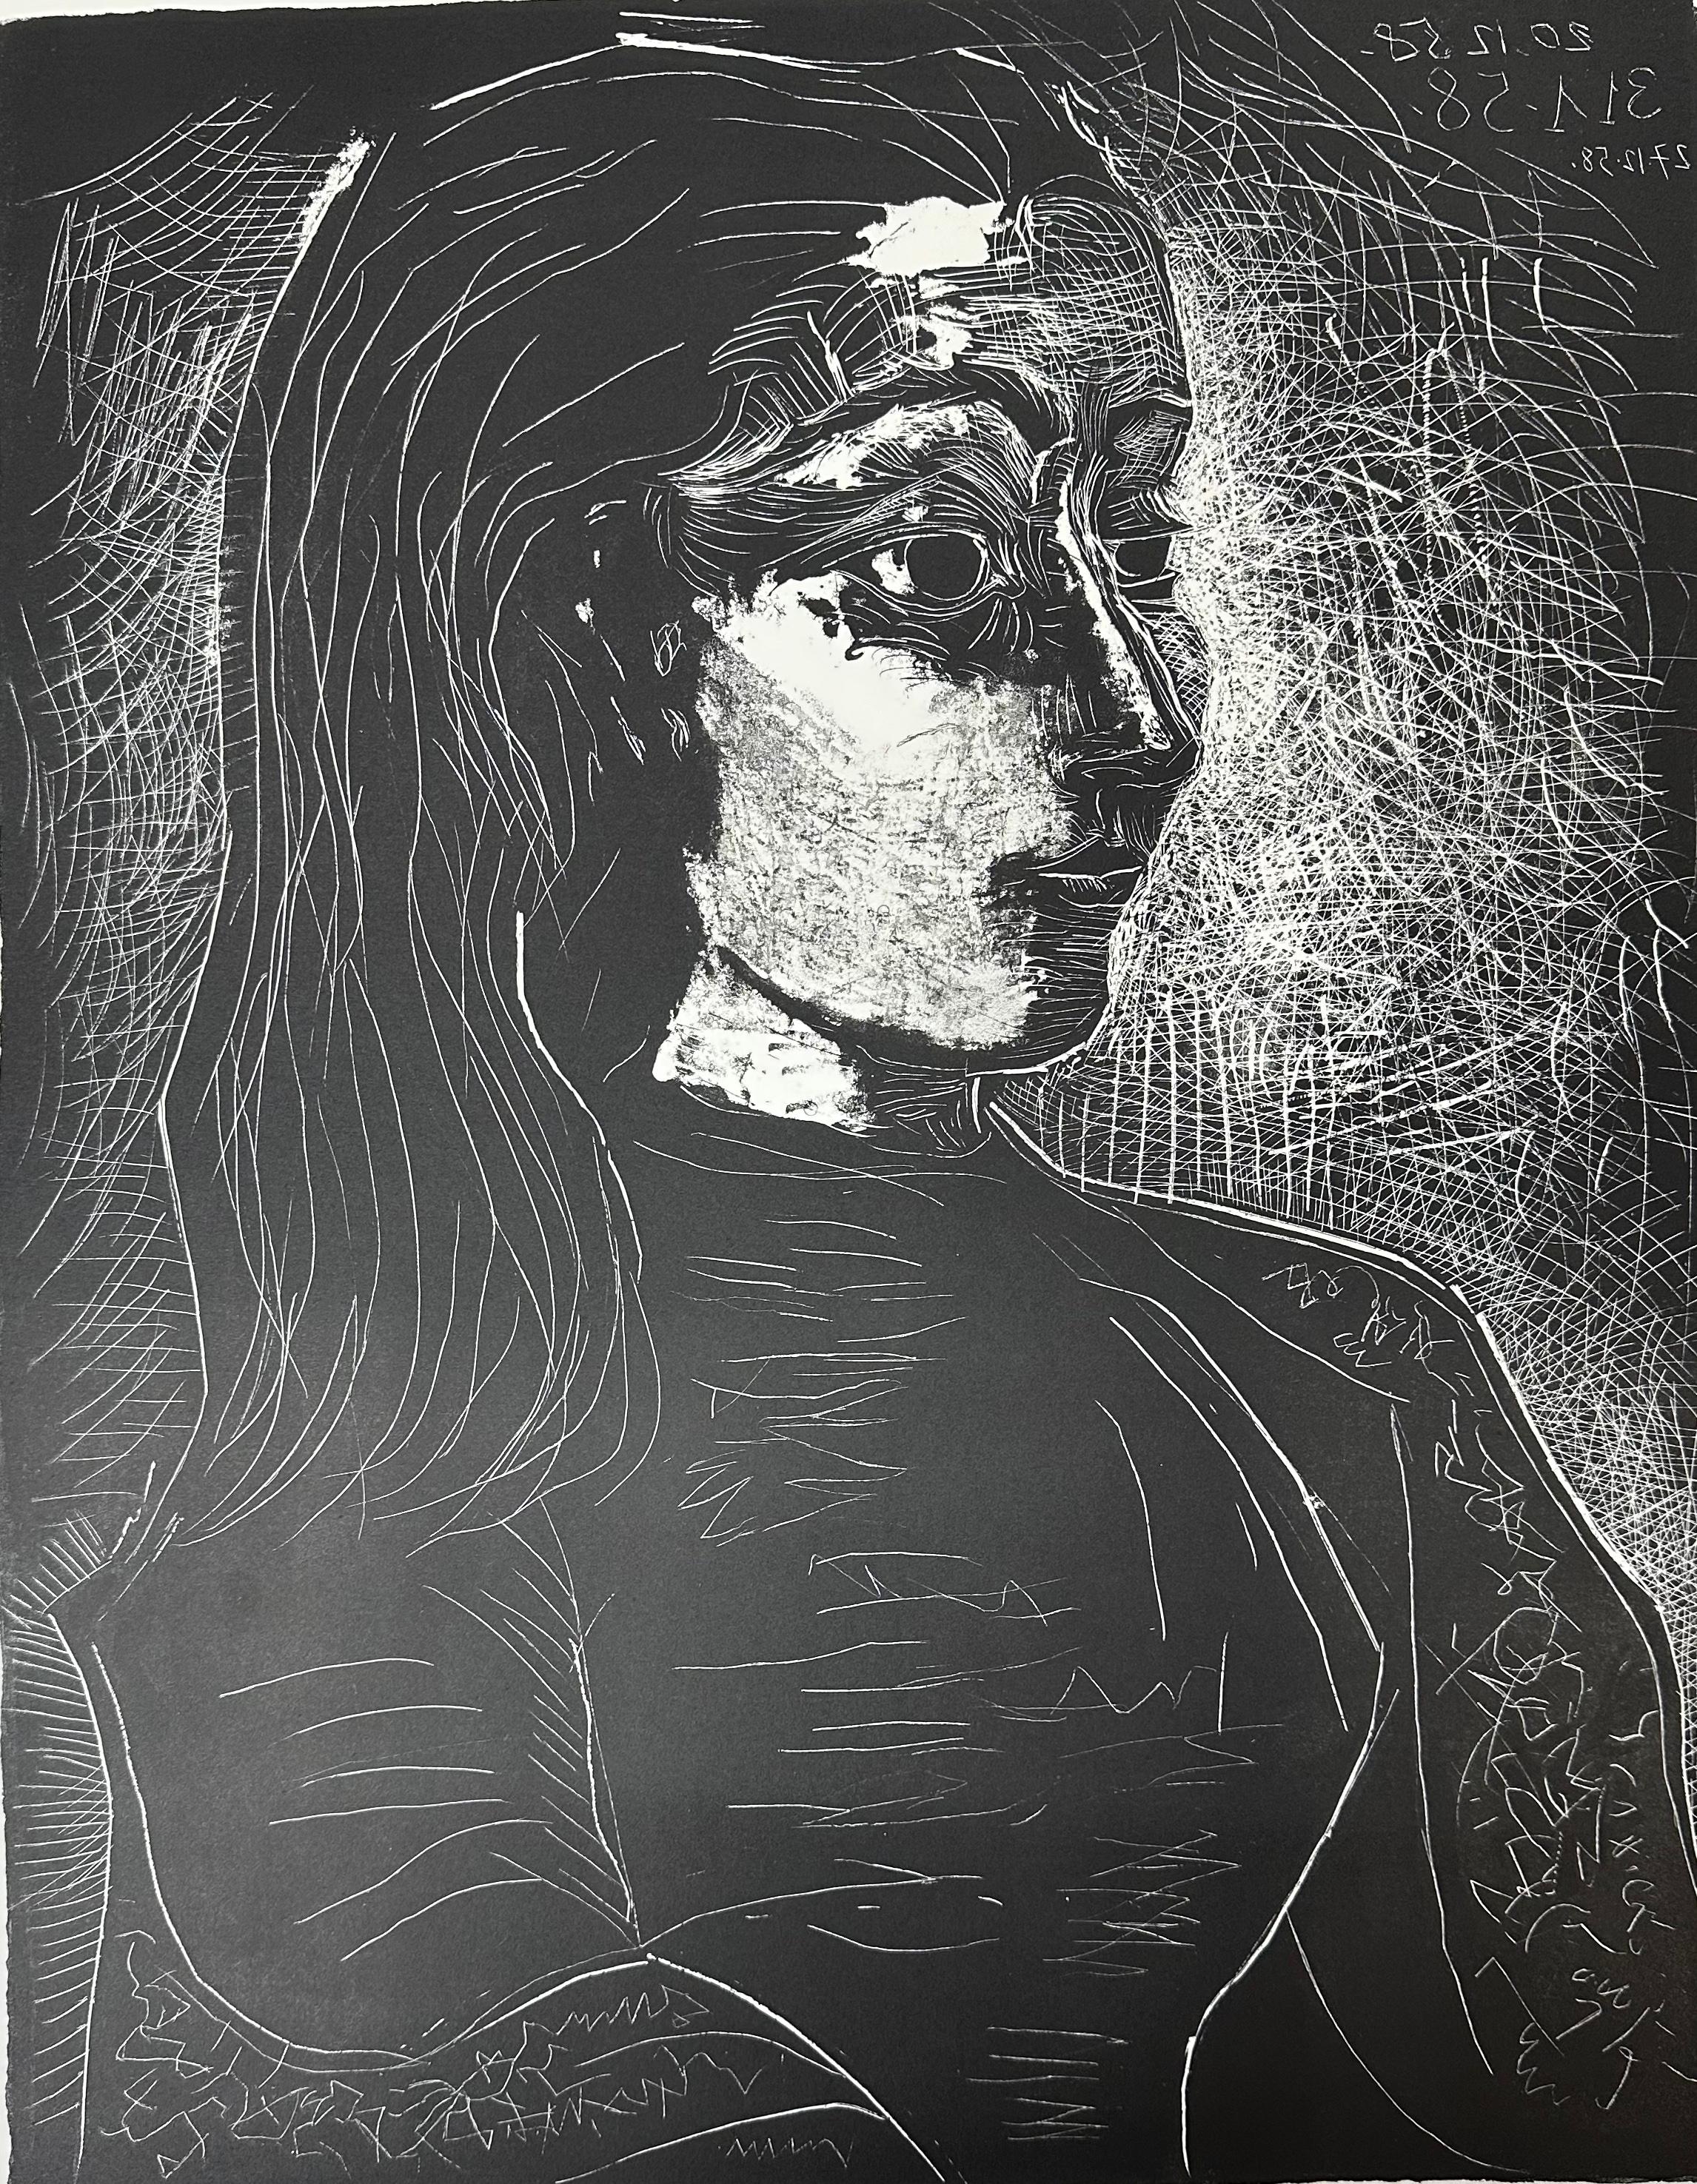 Pablo Picasso
"Portrait de Jacqueline, profil droit"
Lithographie originale
Le troisième et dernier état, exécuté sur le zinc
Signé à la main au crayon, numéroté 21/50 de l'édition de 50
Taille du papier : 28 x 19.75 pouces
Taille de l'image : 22 x